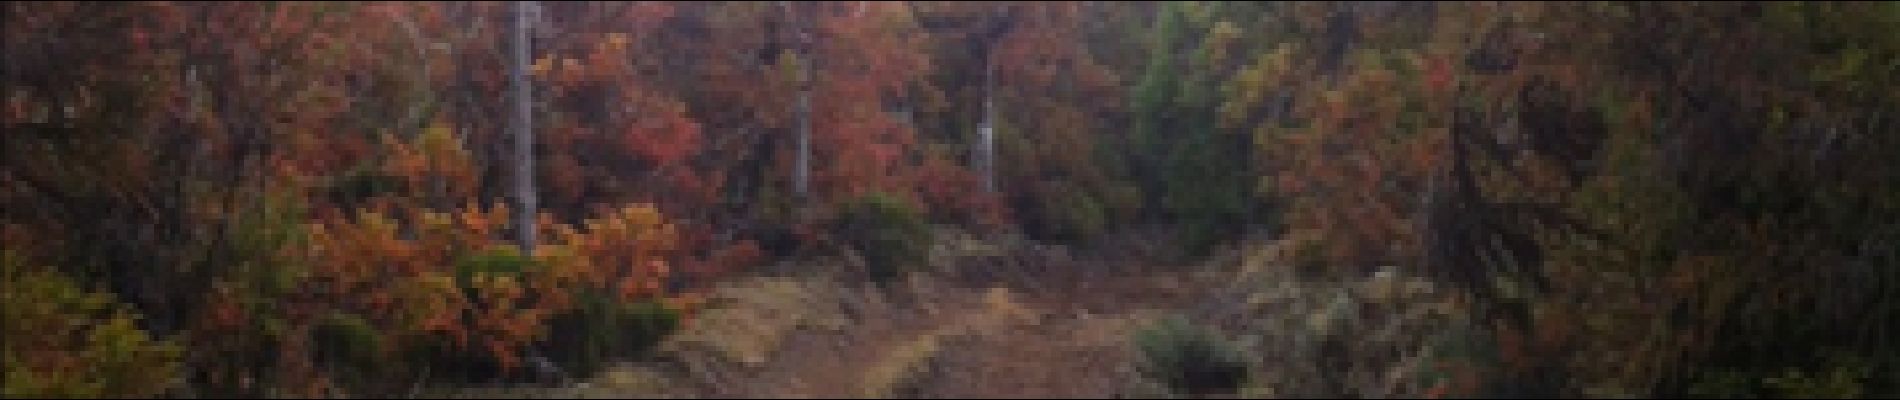 POI Le Tampon - sentier dans la forêt - Photo